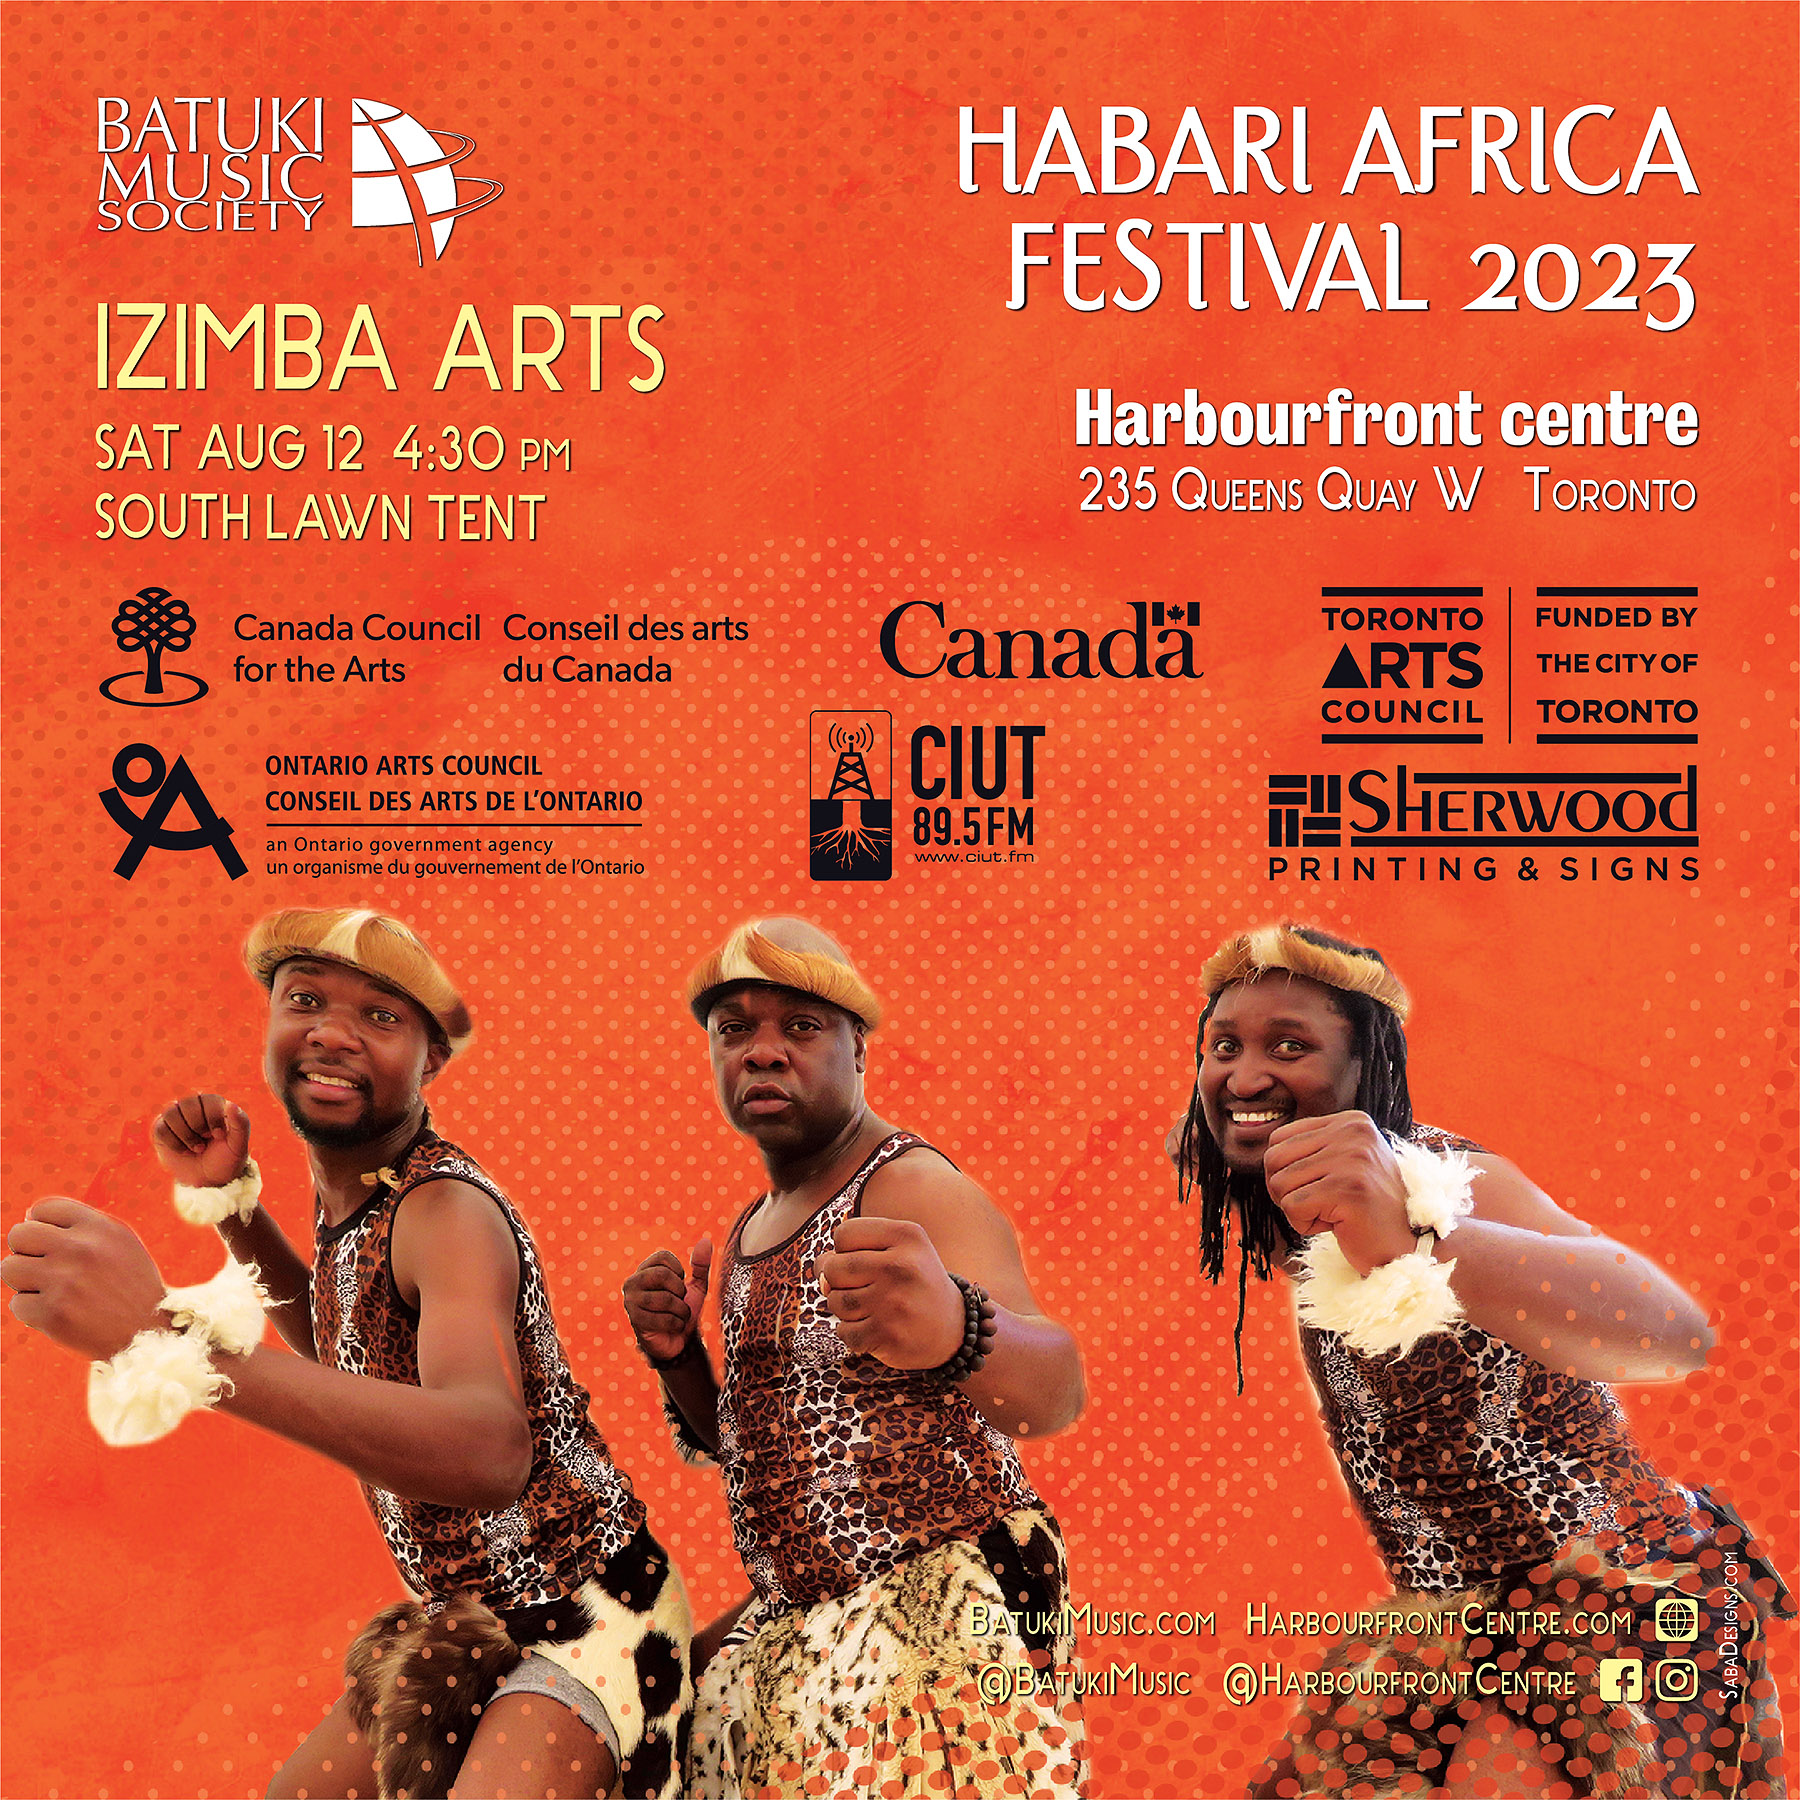 Habari Africa Live Festival 2023 by Batuki Music Society Izimba Arts